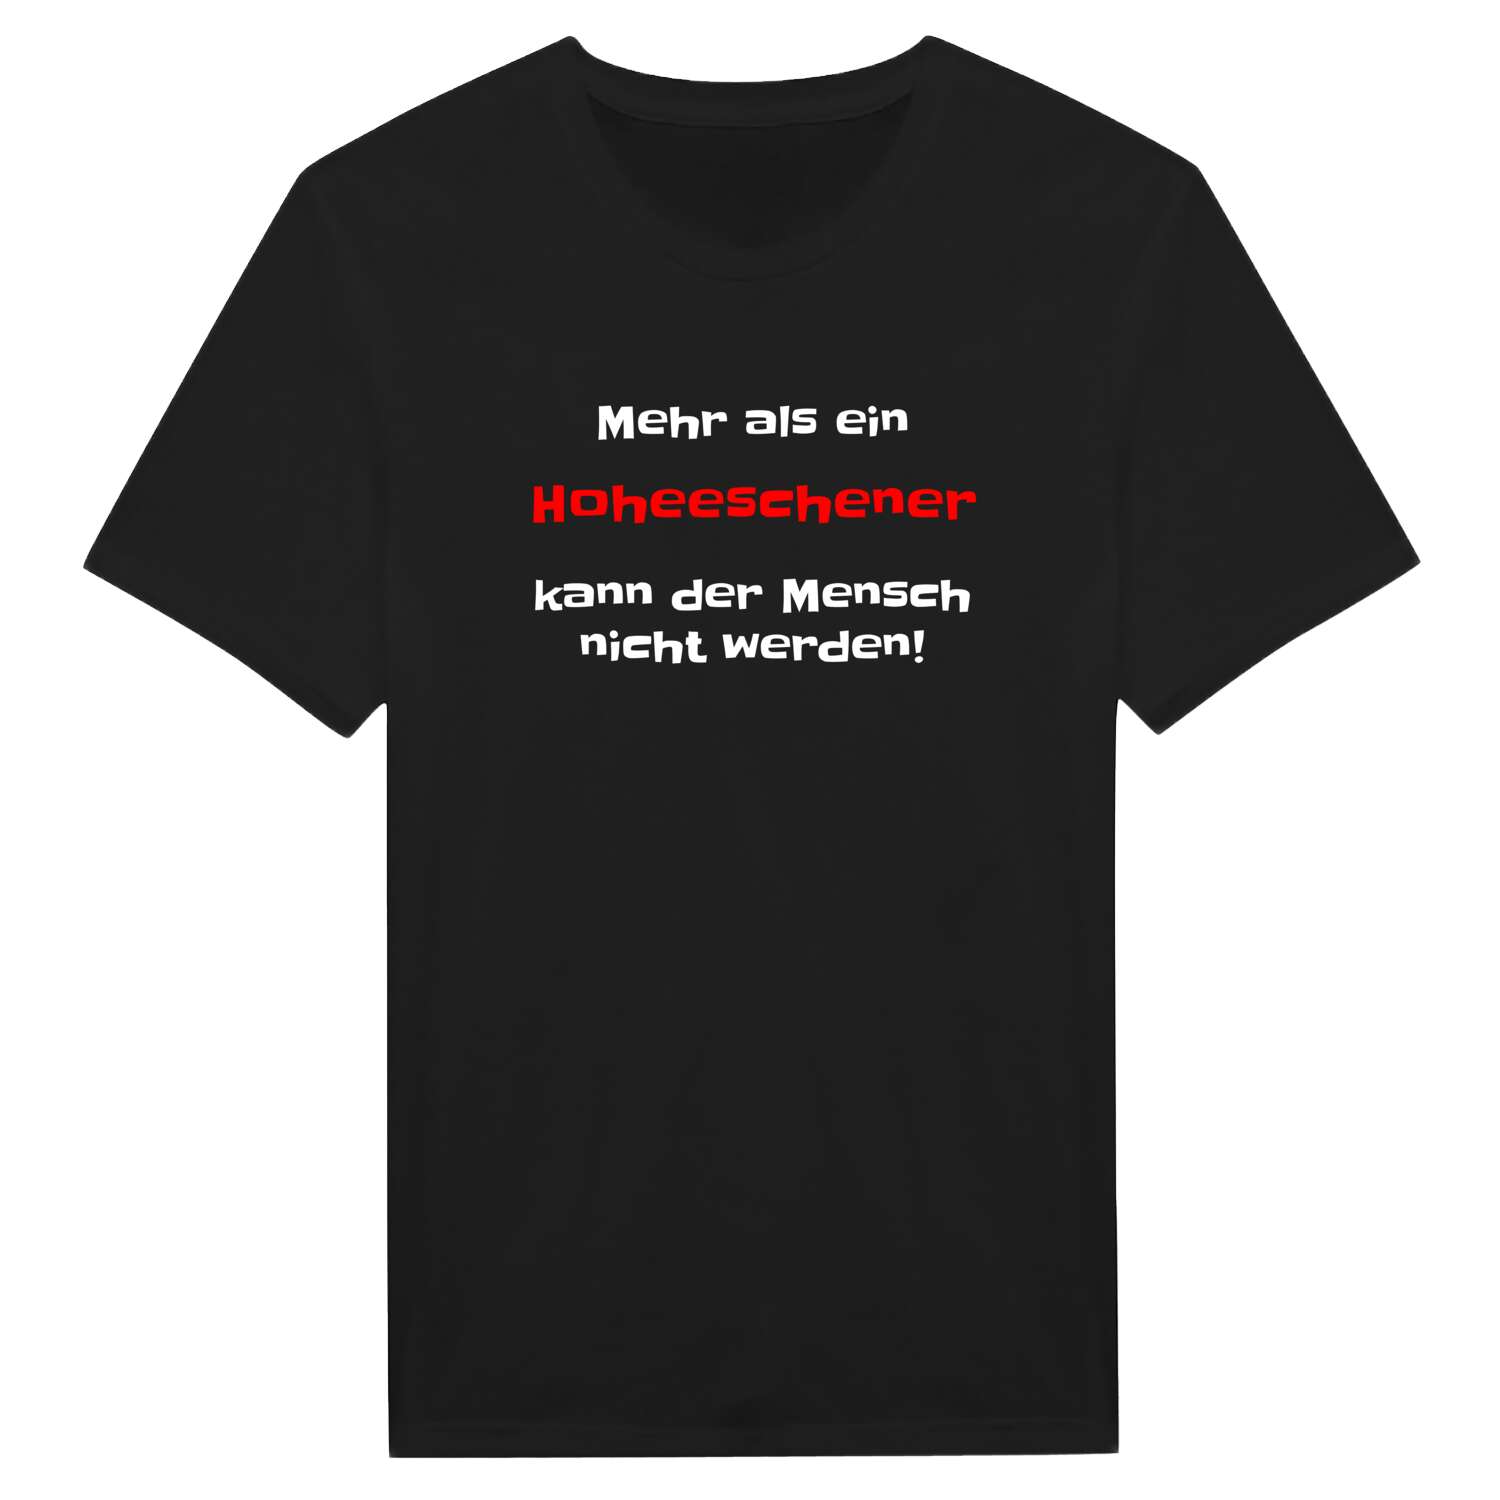 Hoheesche T-Shirt »Mehr als ein«